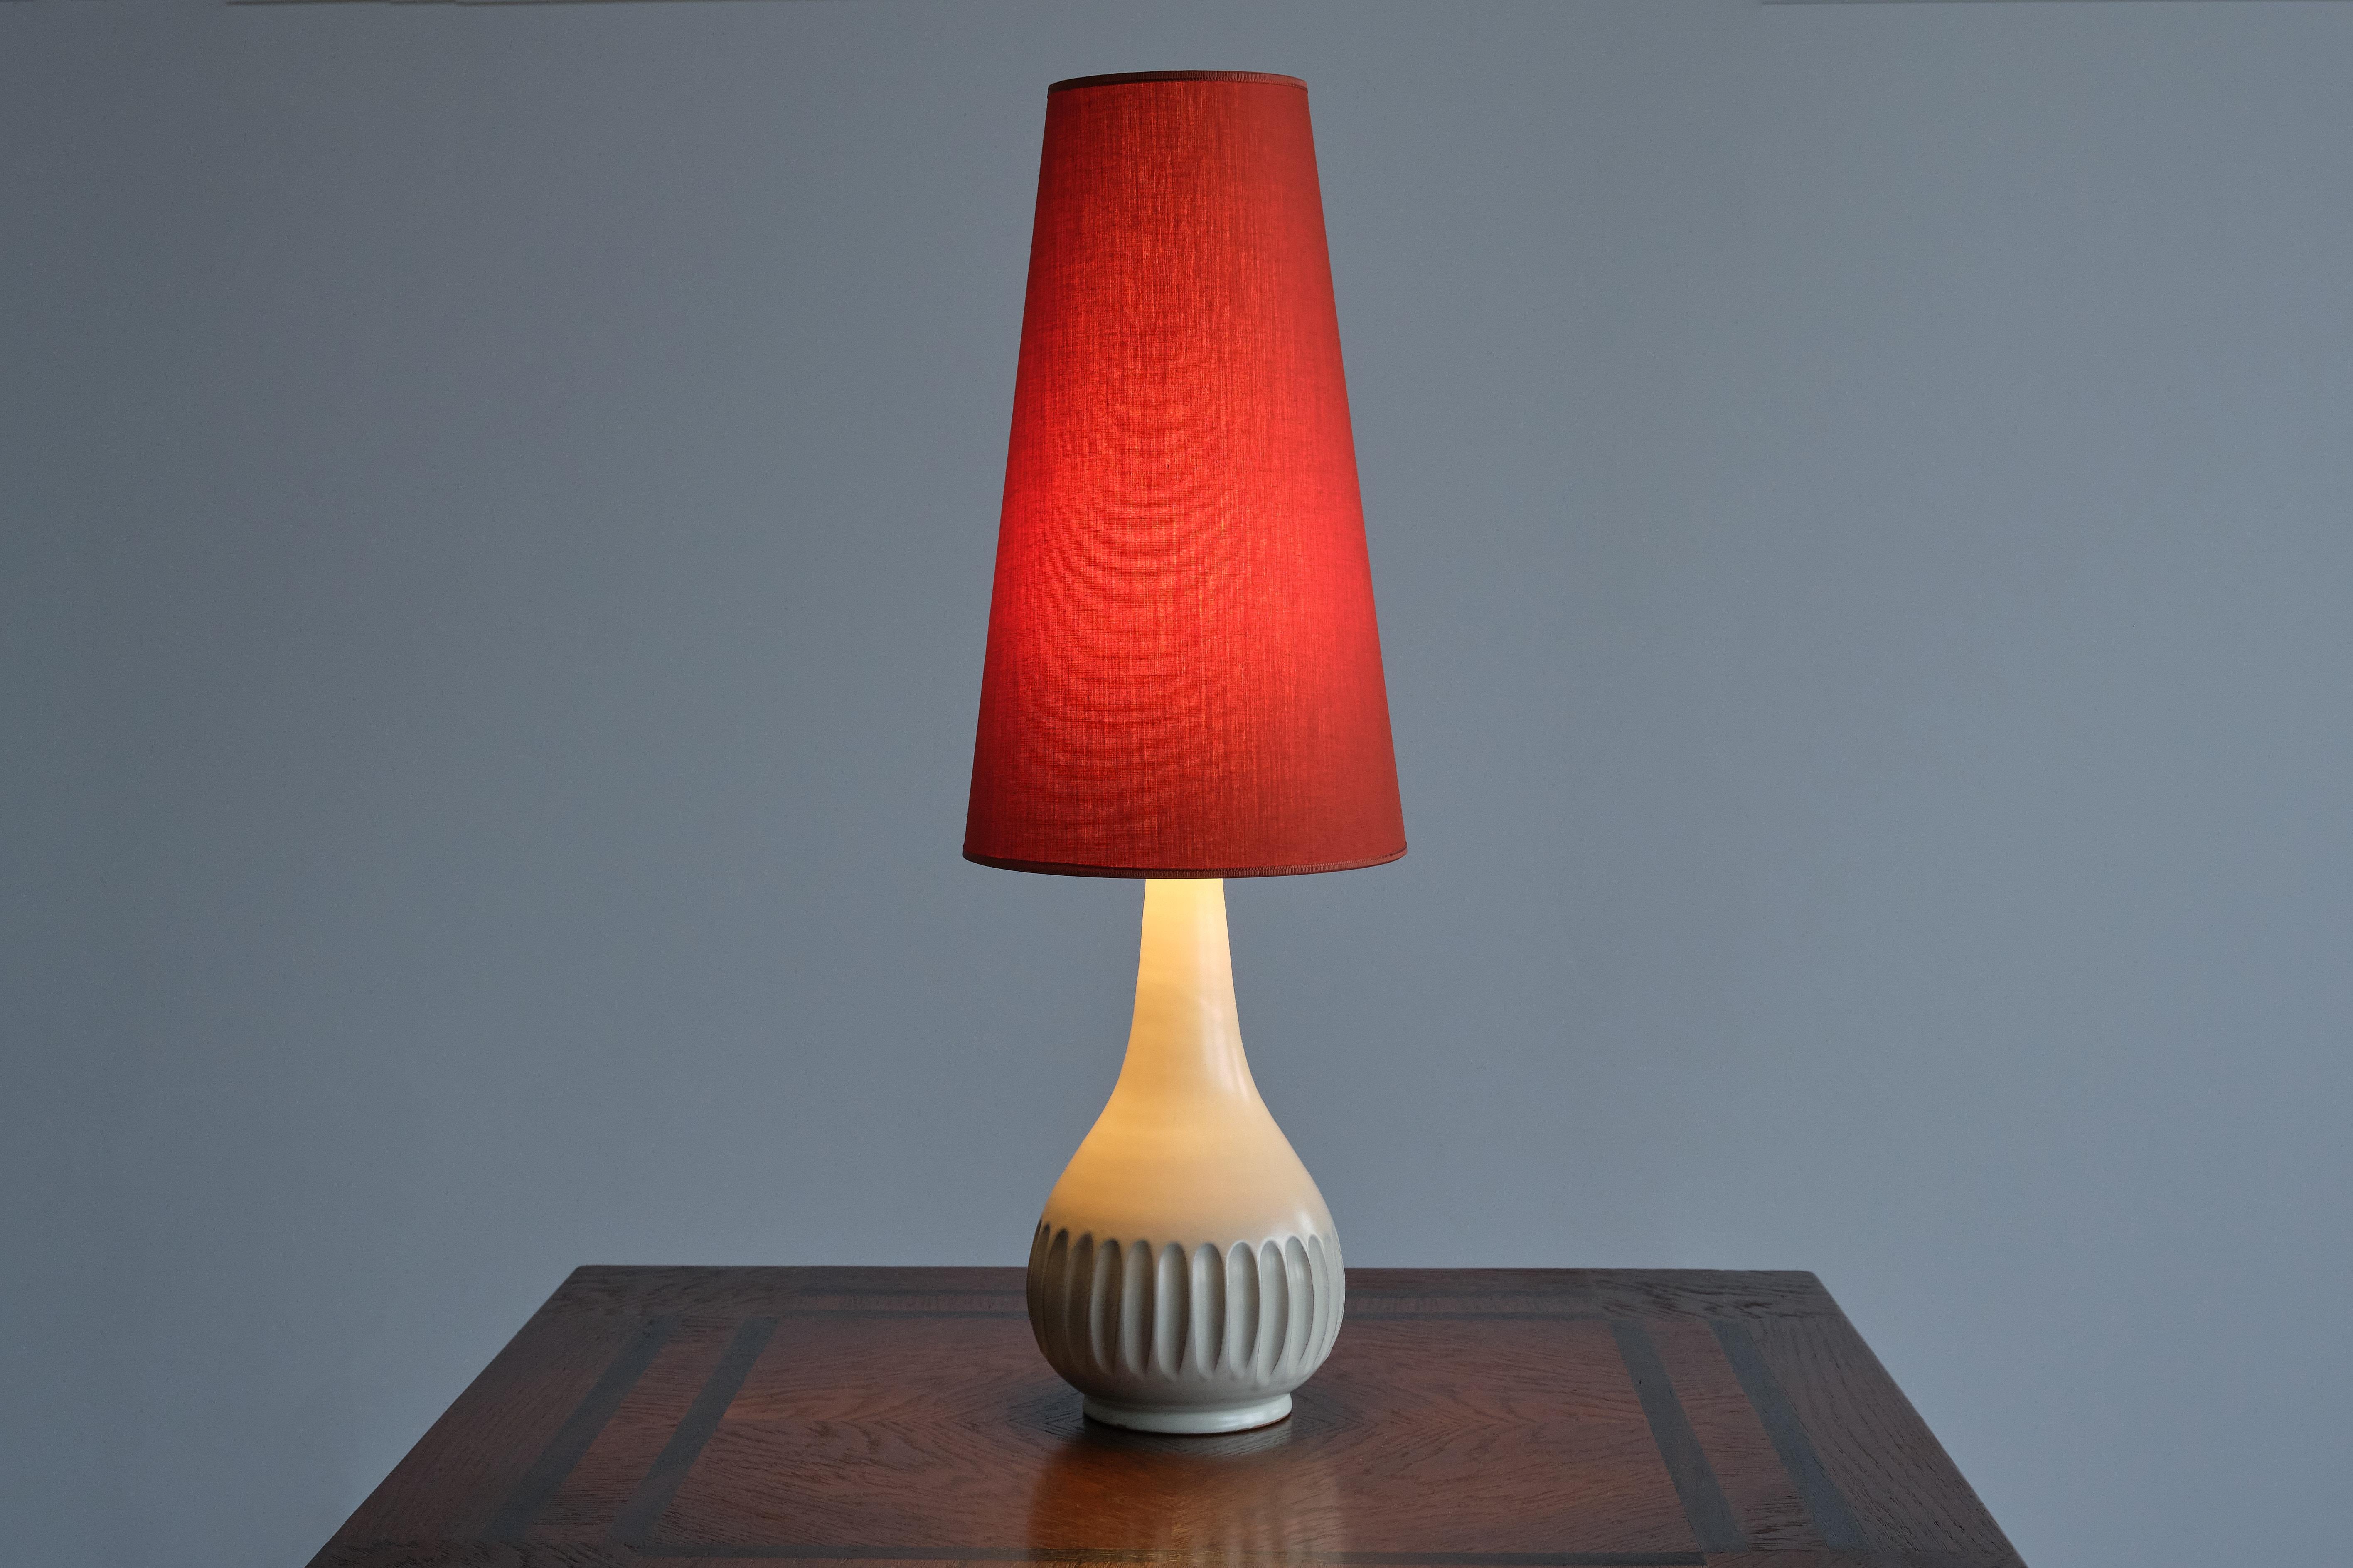 Cette élégante lampe de table a été conçue par la peintre et céramiste suédoise Anna-Lisa Thomson. La base a été produite par le fabricant de céramique et de porcelaine Upsala-Ekeby à la fin des années 1940. La lampe est estampillée 